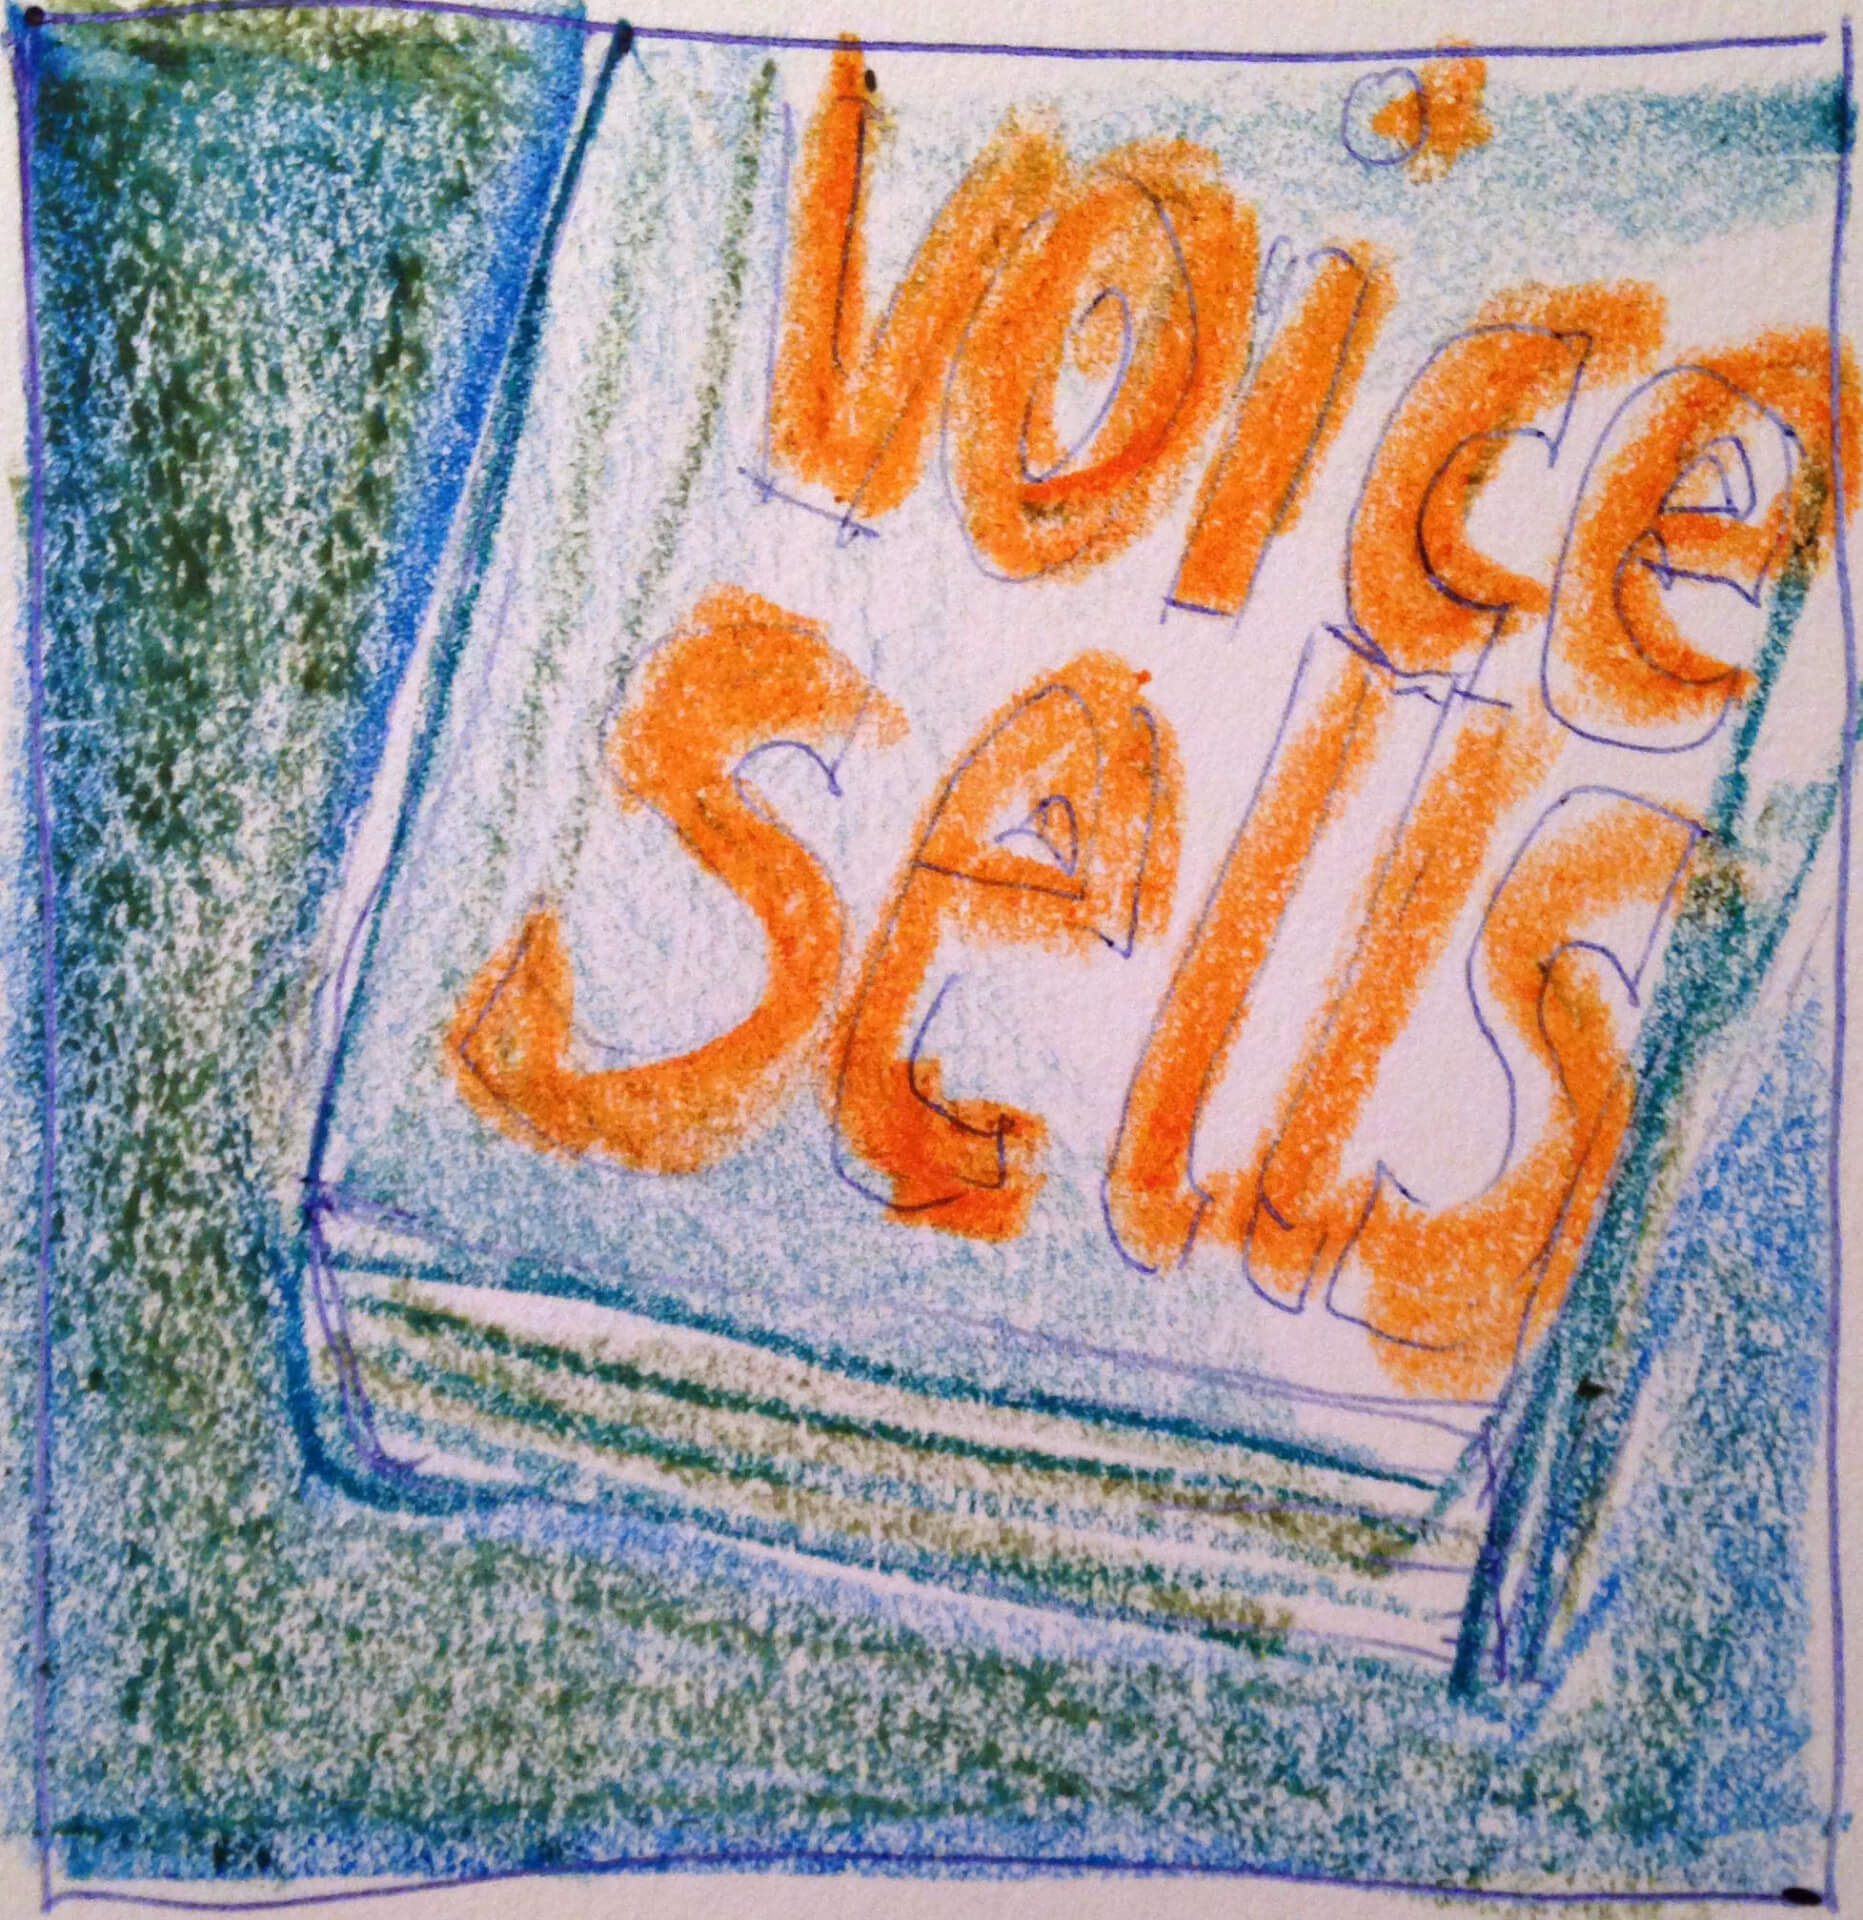 Handgezeichnete Skizze mit dem Satz „Stimme verkauft“ in Orange auf weißem Hintergrund mit blauen und grünen Randakzenten.